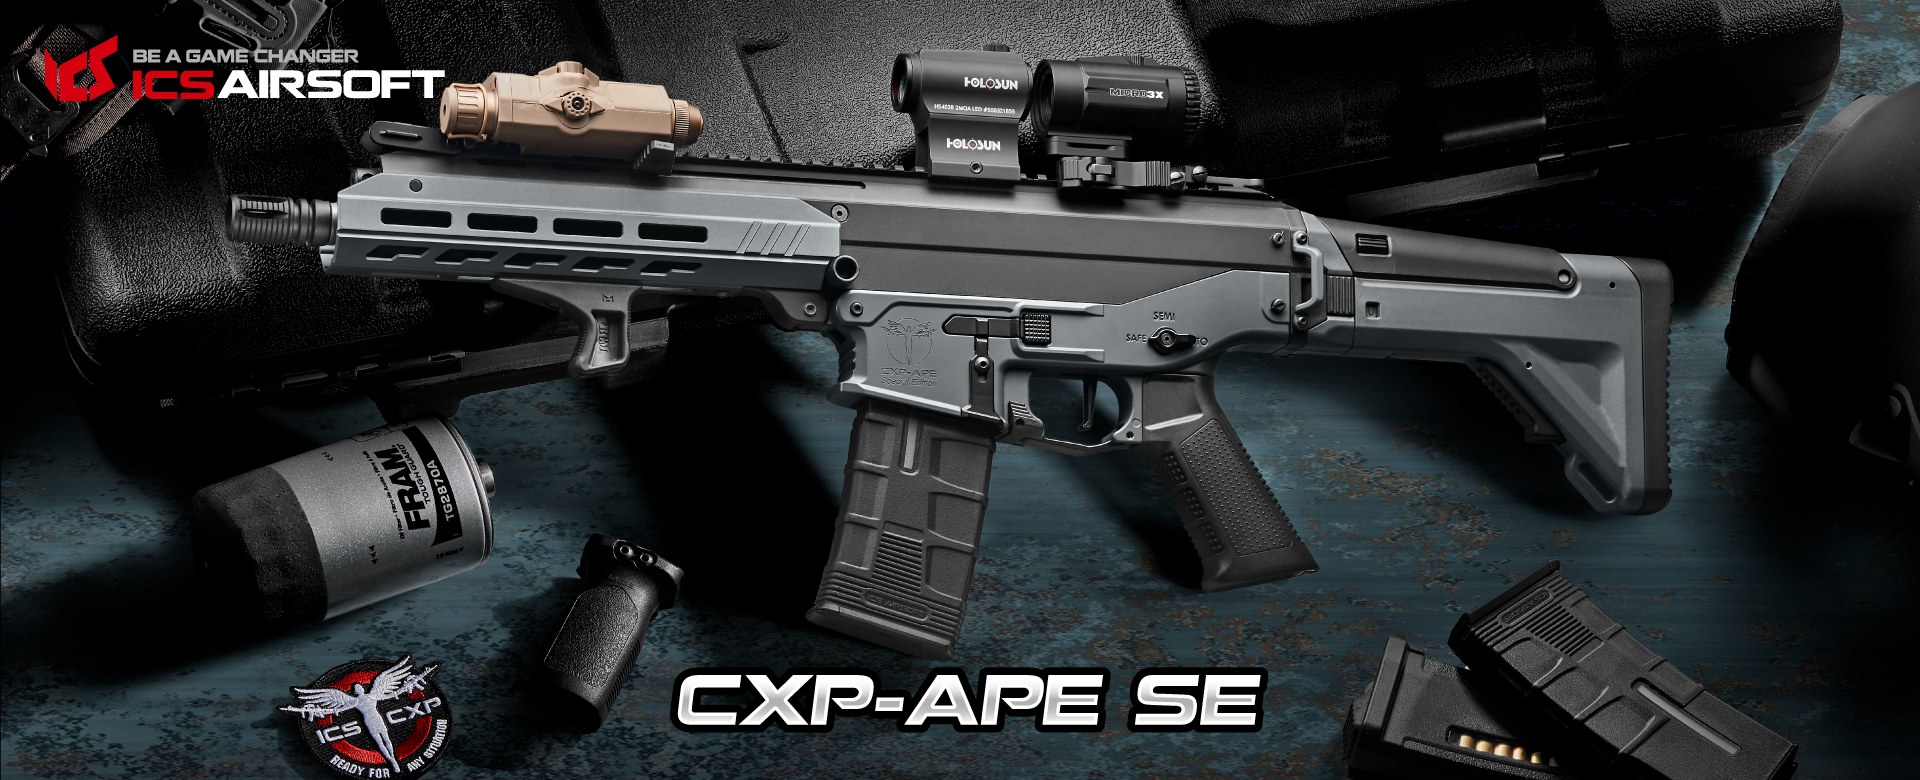 CXP-APE SE